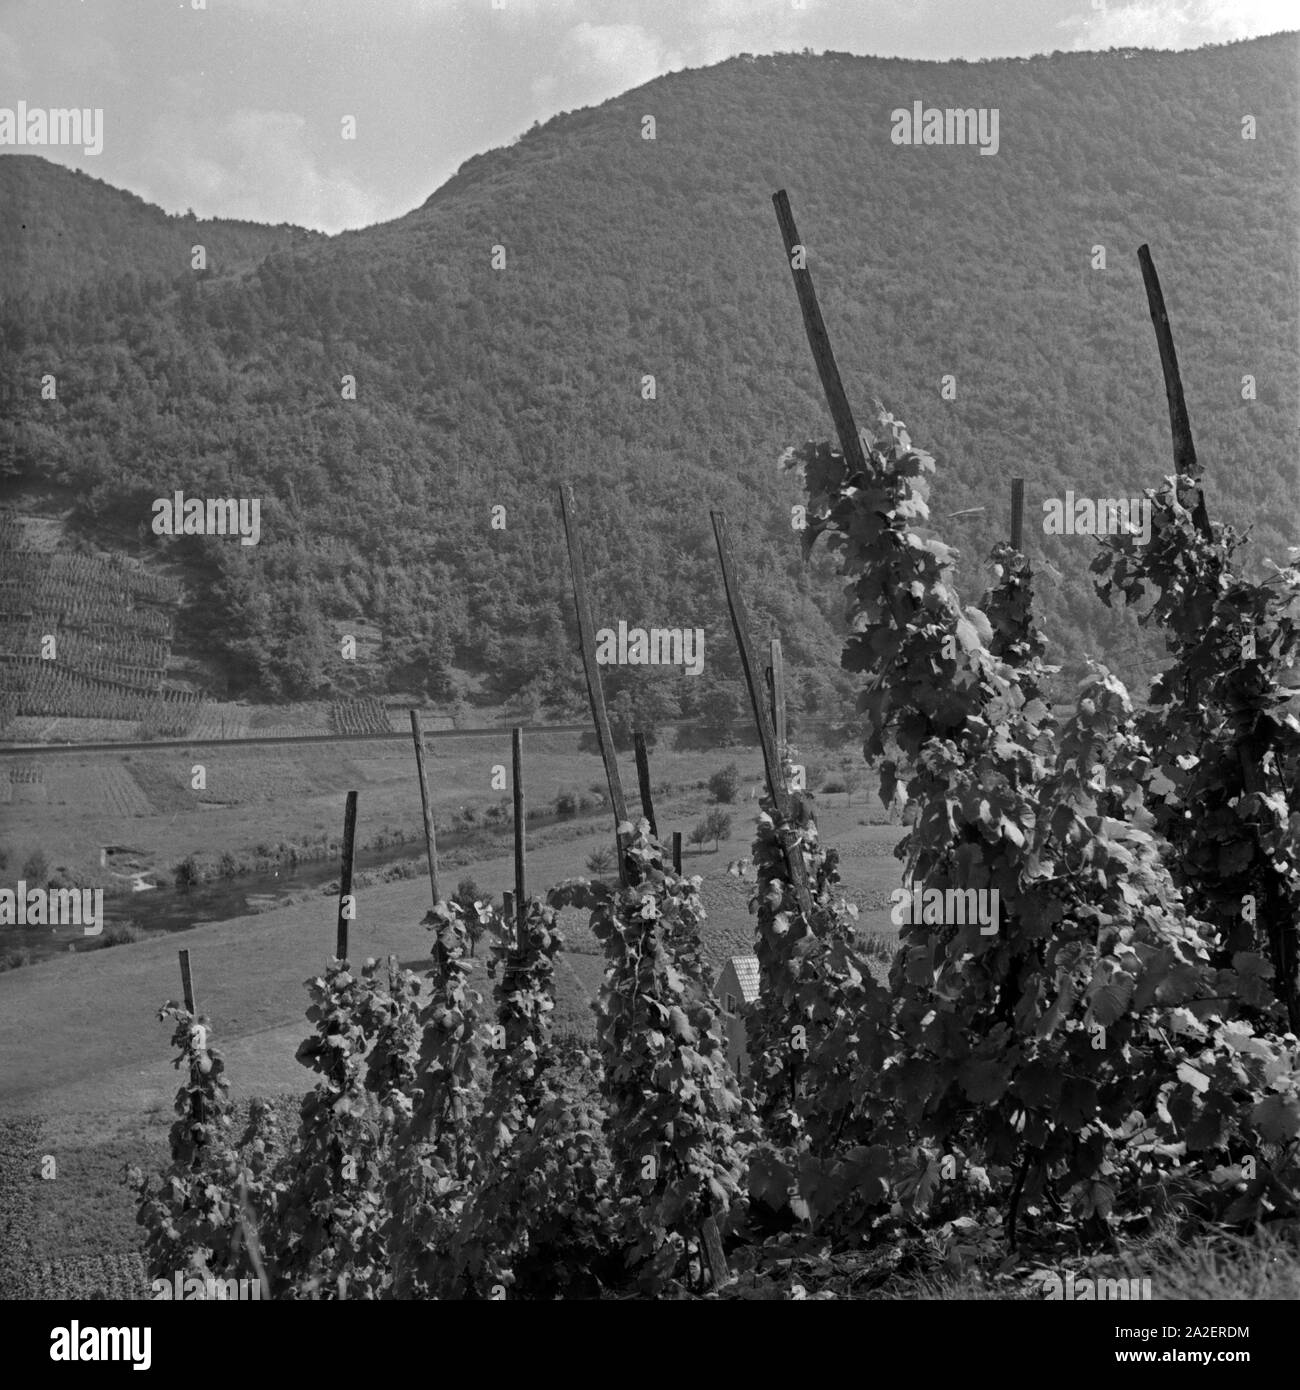 Weinberge an der Ahr, Deutschland 1930er Jahre. Vineyards at river Ahr, Germany 1930s. Stock Photo